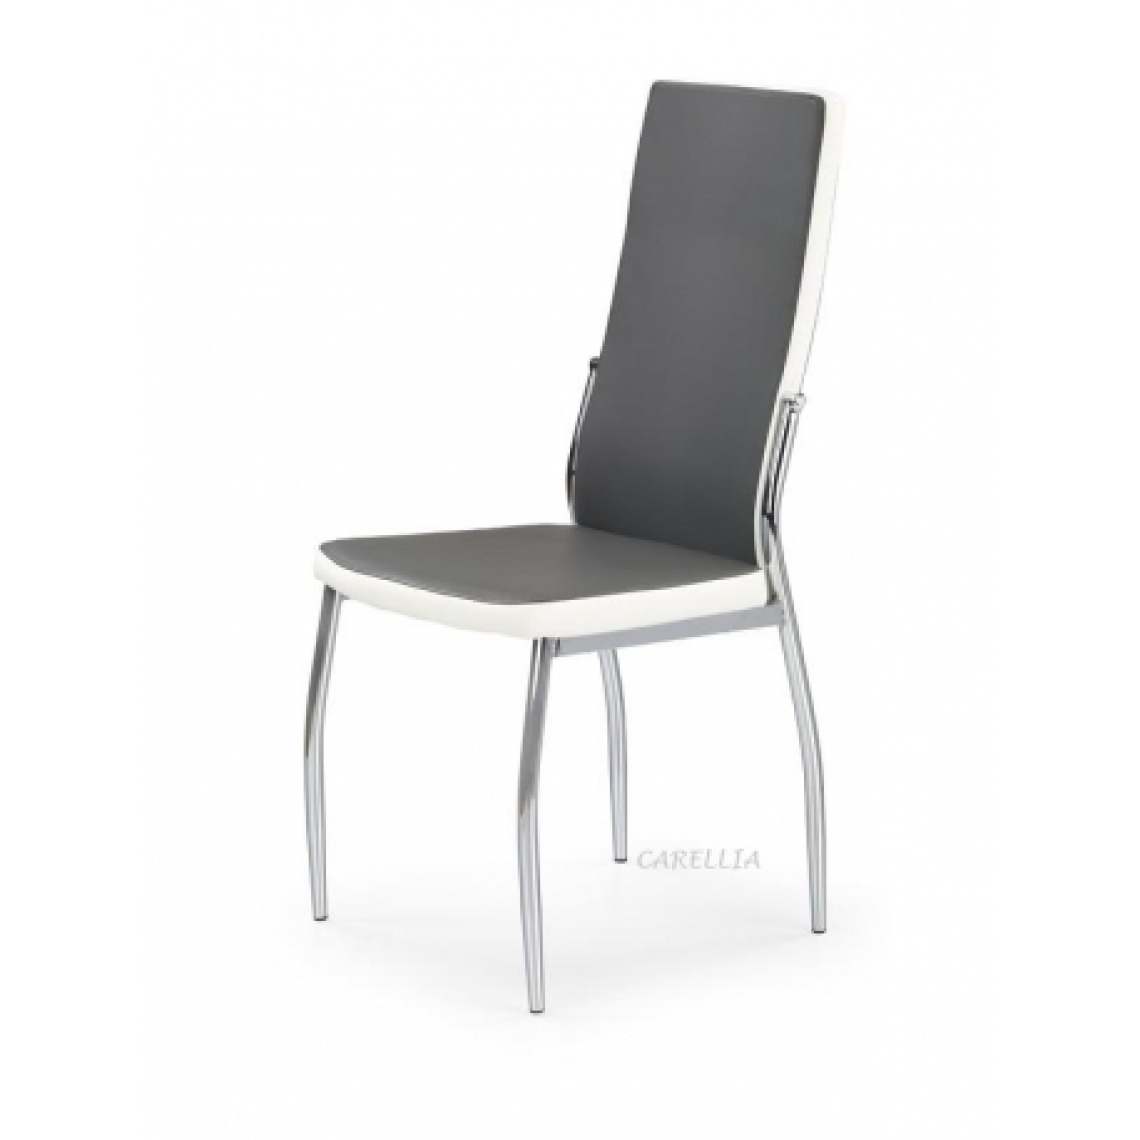 Carellia - JACQUES lot de 4 chaises en cuir synthétique - Gris - Chaises